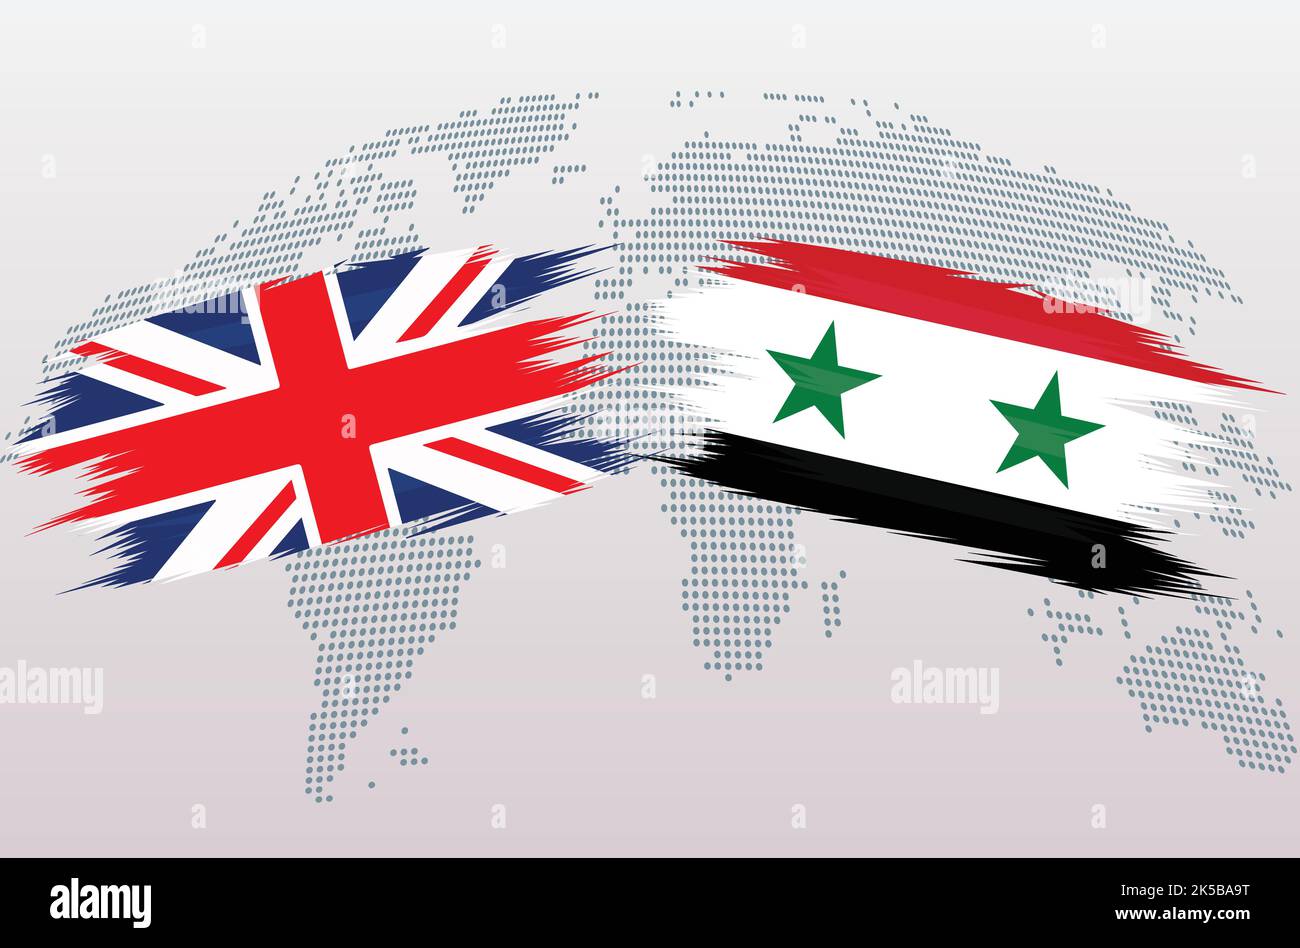 Bandiere britanniche e siriane. Bandiere del Regno Unito e della Siria, isolate su sfondo grigio della mappa del mondo. Illustrazione vettoriale. Illustrazione Vettoriale